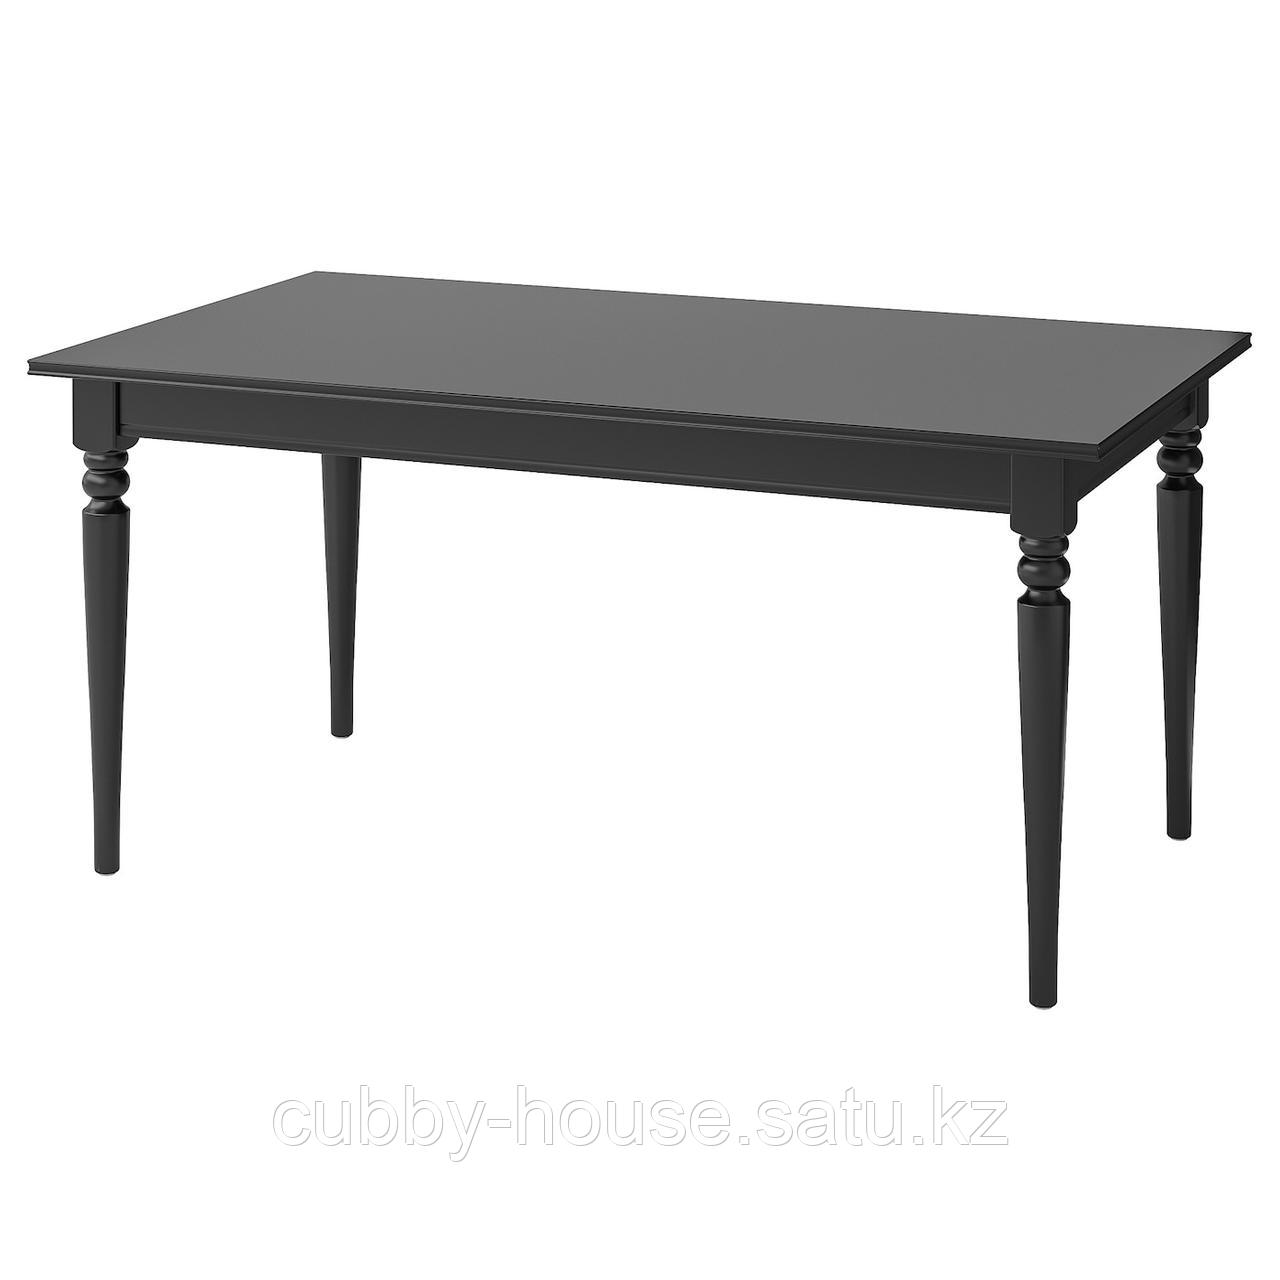 ИНГАТОРП Раздвижной стол, черный, 155/215x87 см